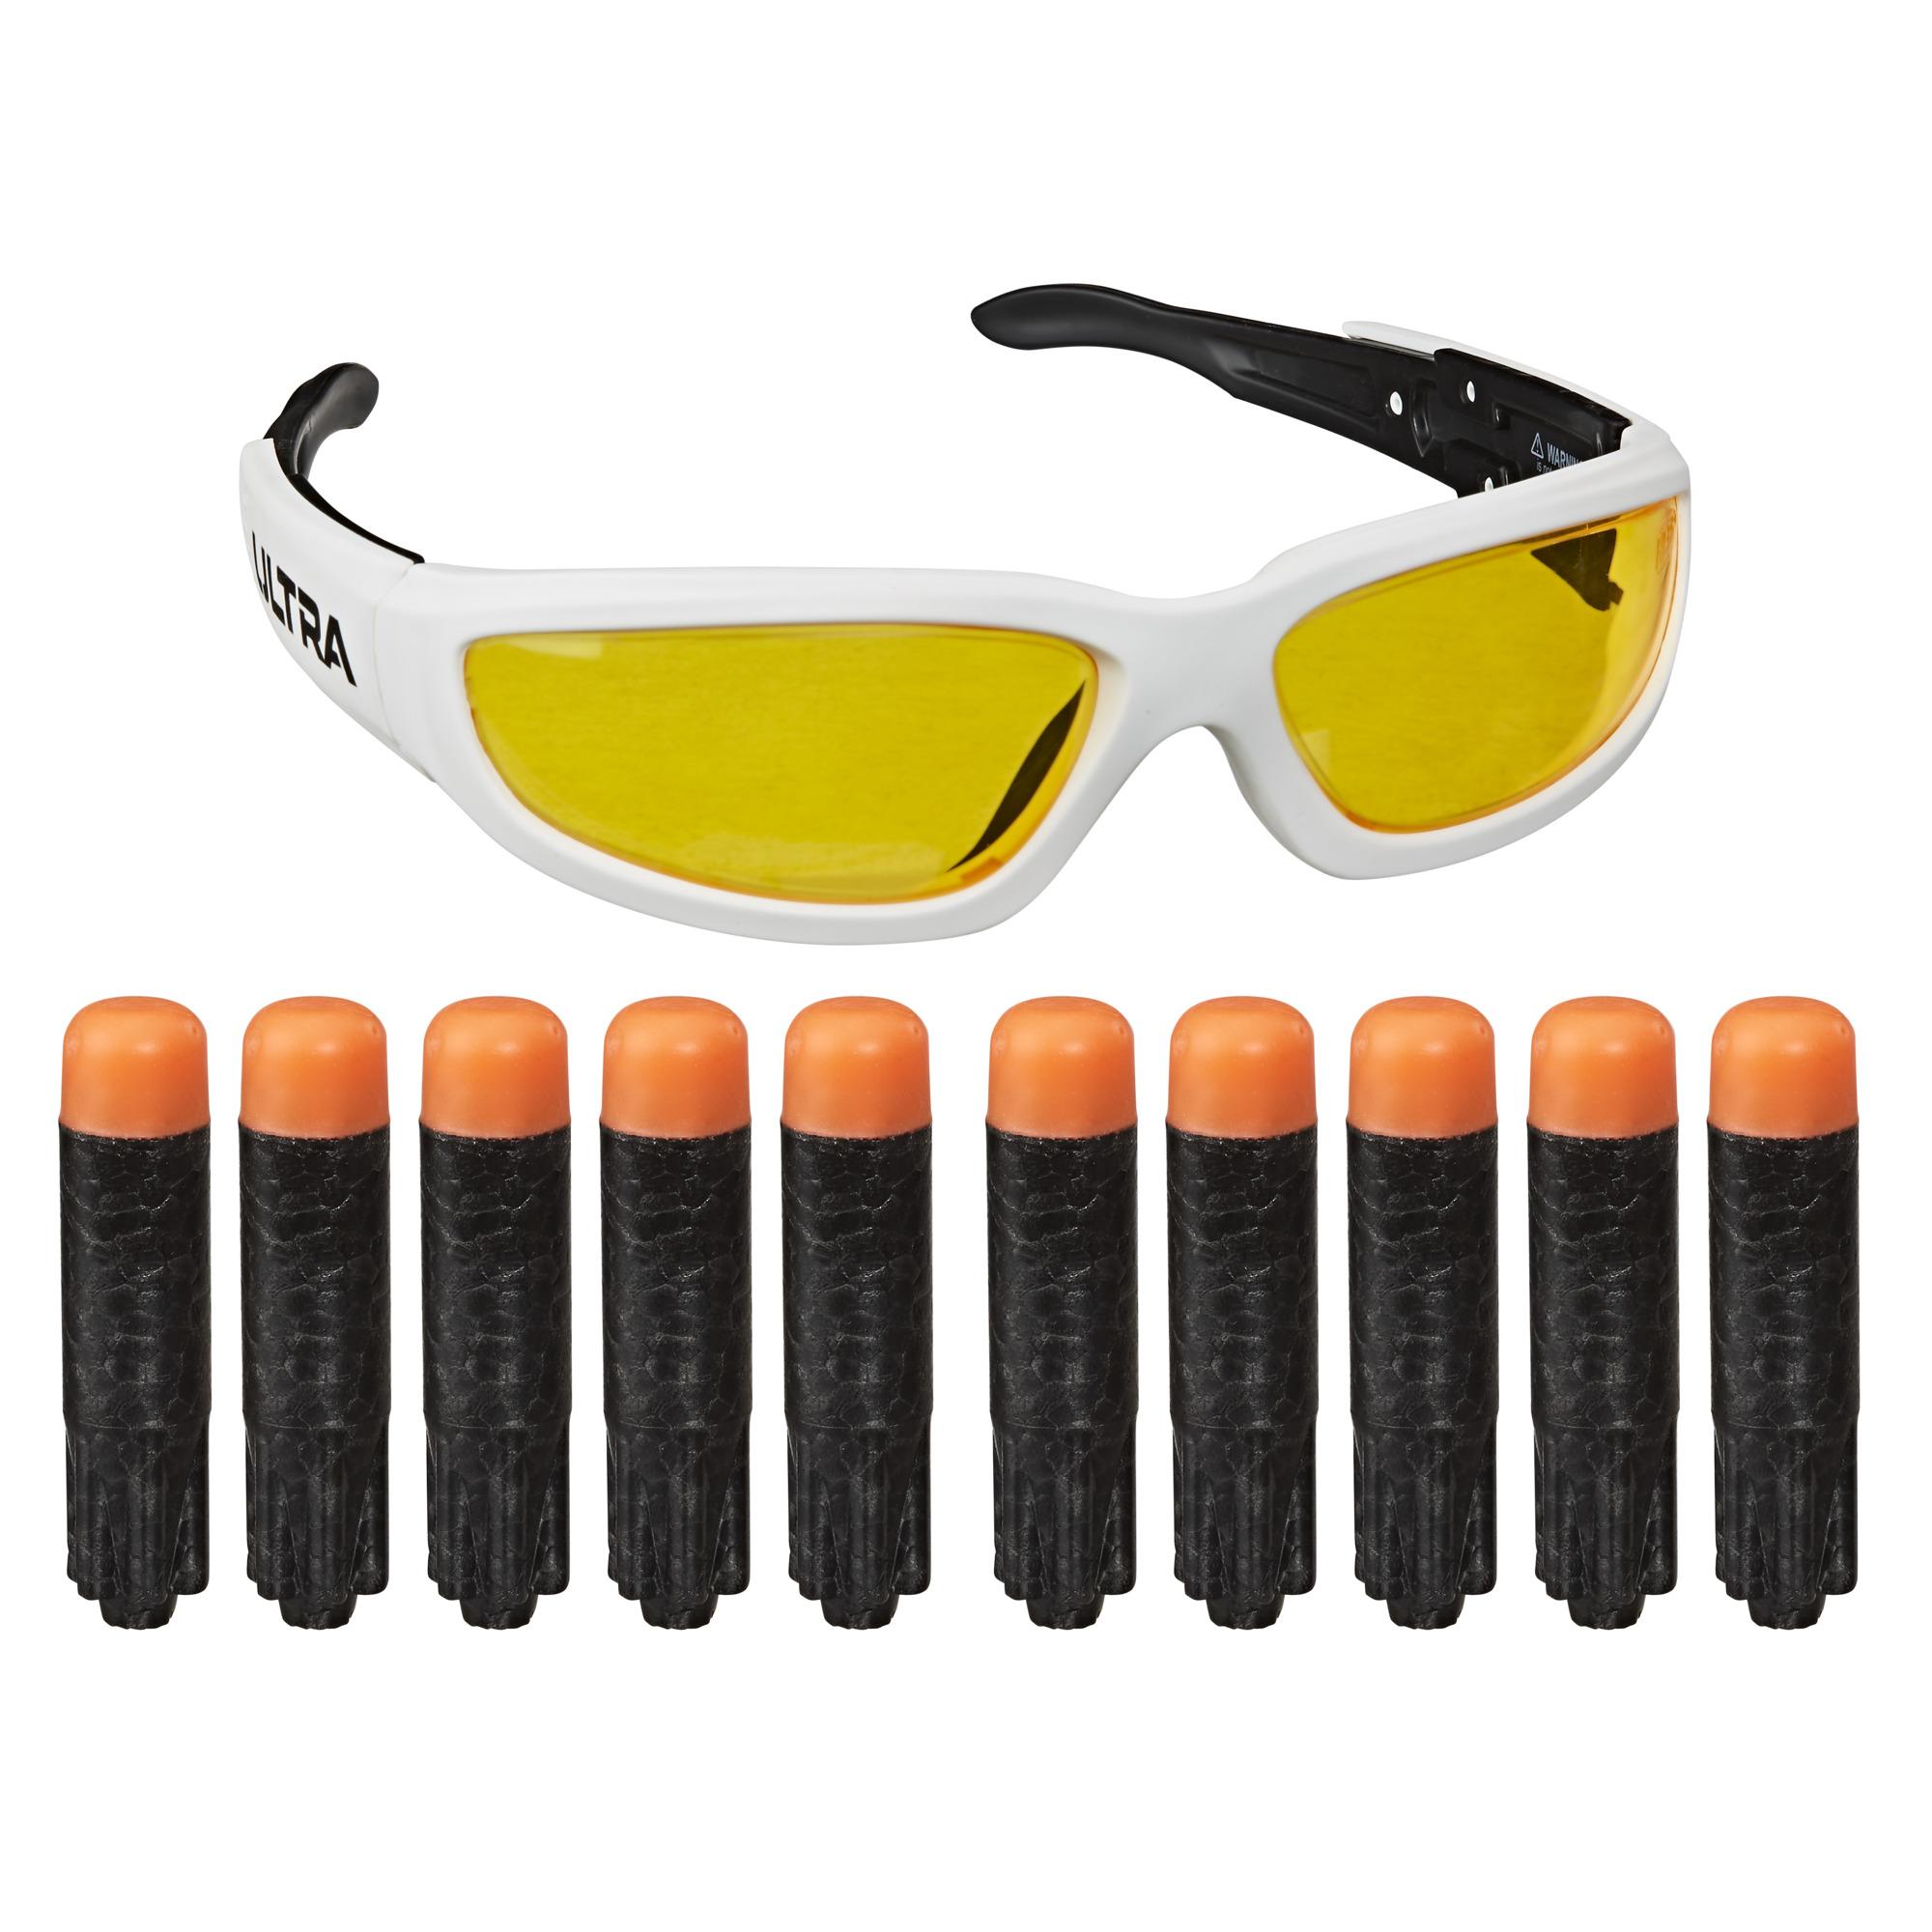 Nerf Nerf Ultra Vision Gear Brille und 10 Nerf Ultra Darts Set gelb 